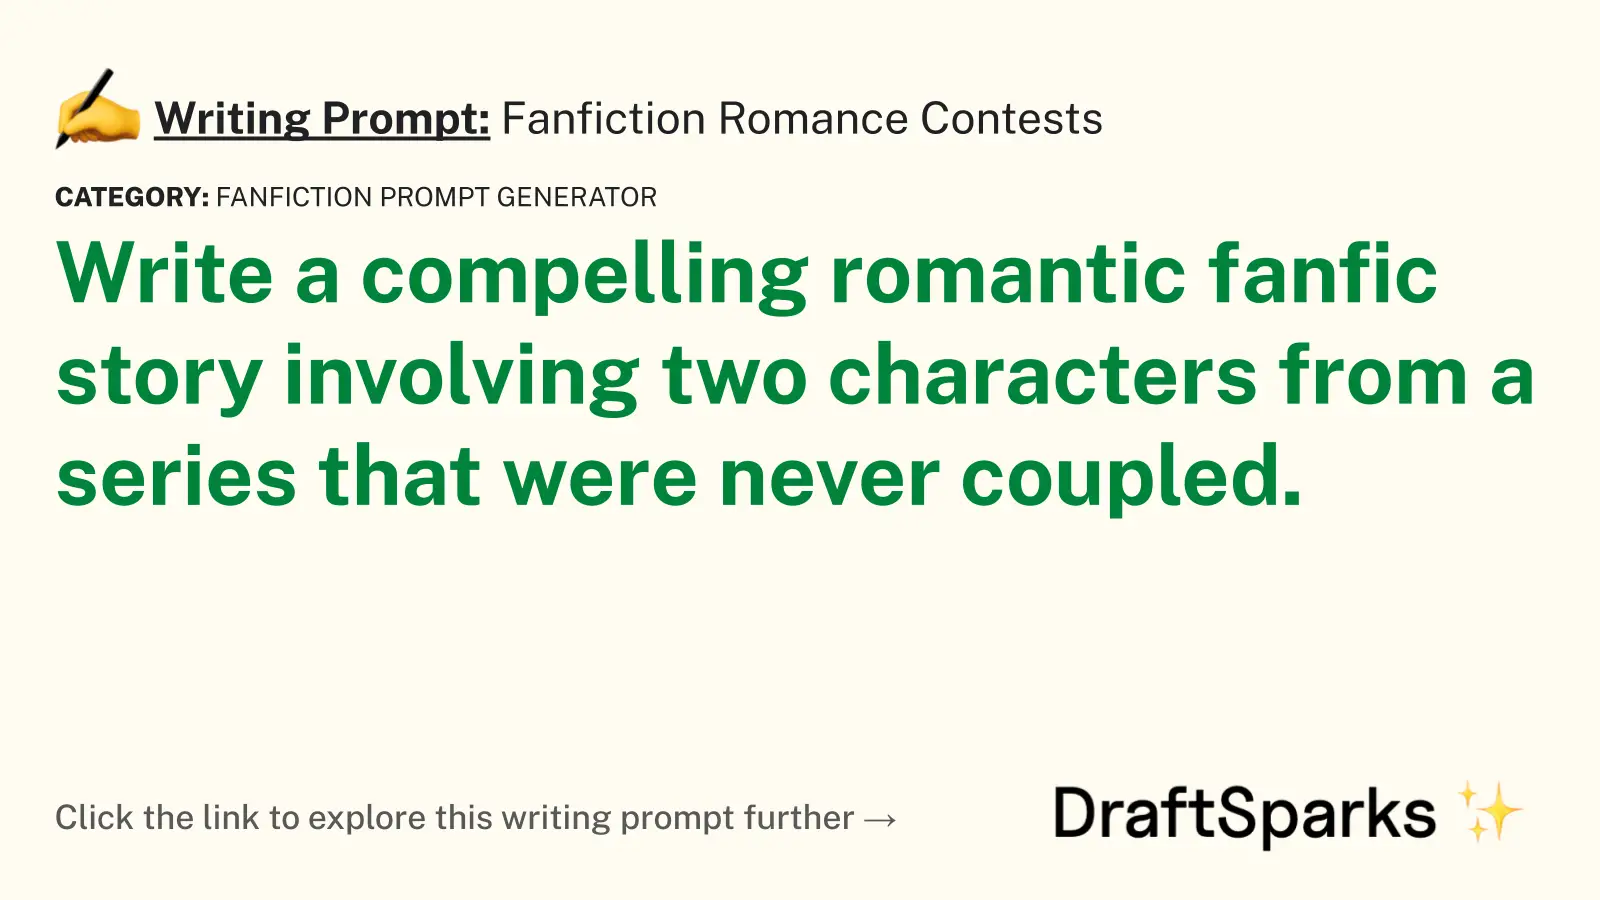 Fanfiction Romance Contests